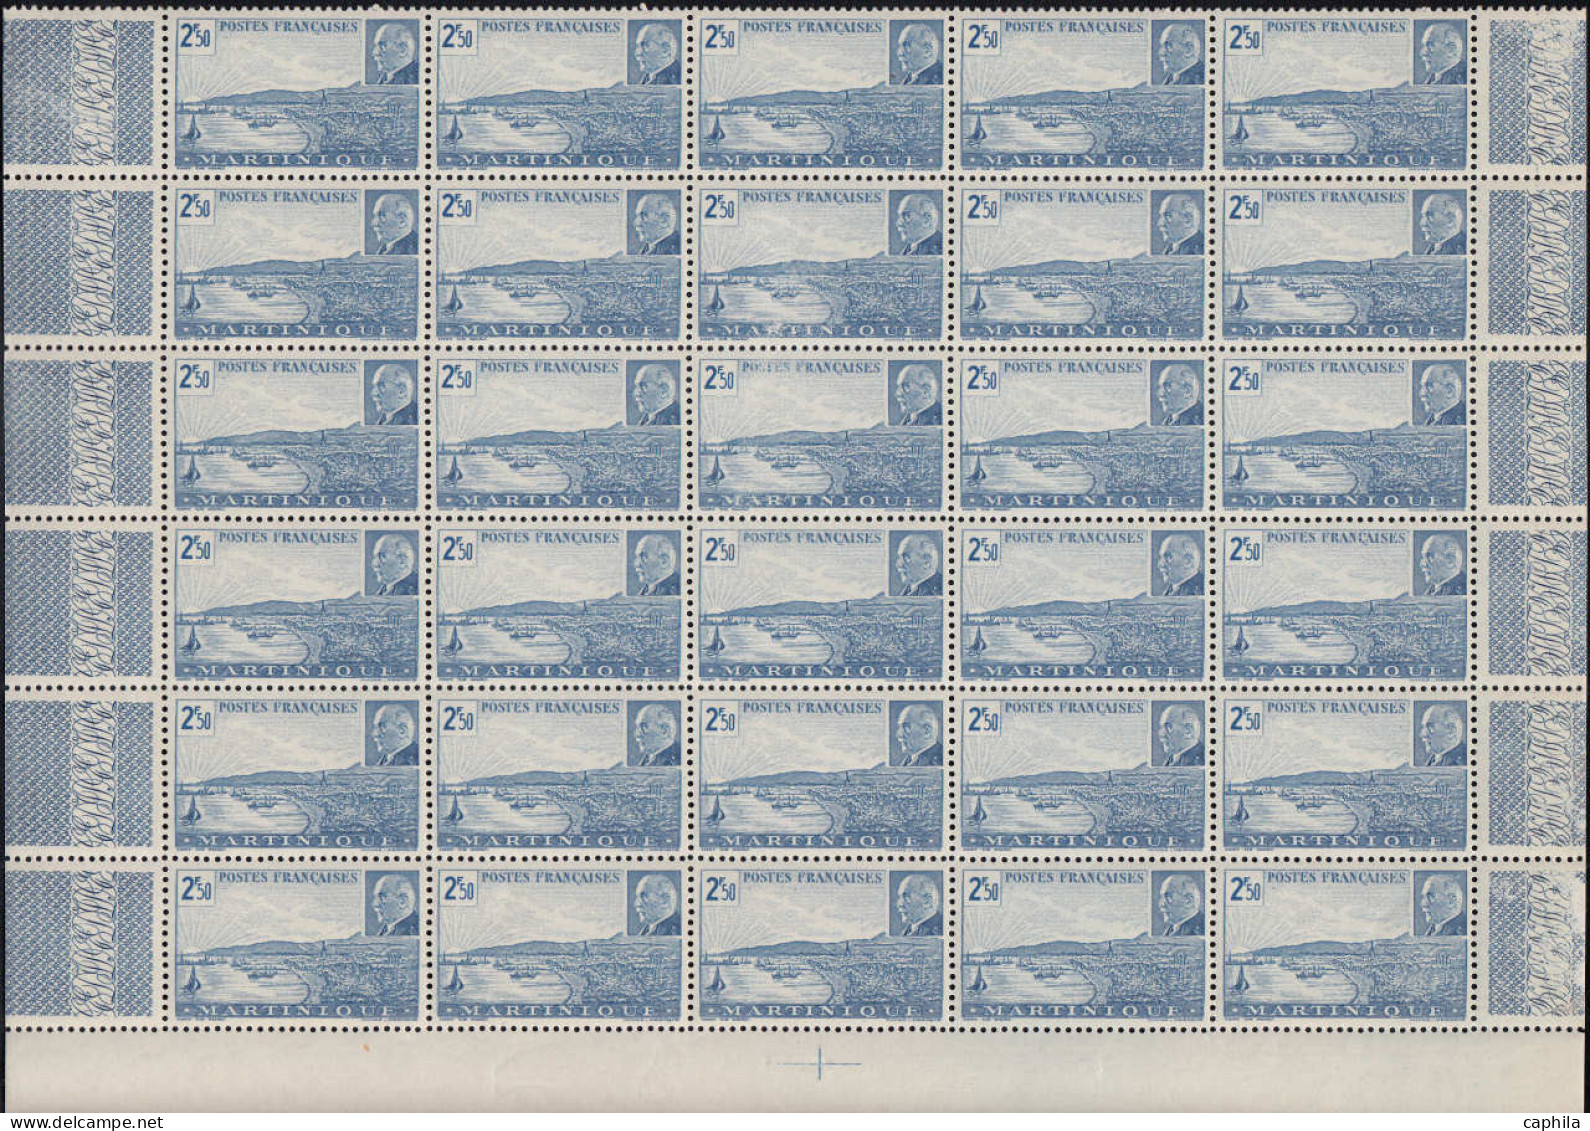 ** COLONIES SERIES - Poste - 1944, Pétain en panneaux de 30 (sauf AEF - Madagascar - Océanie) souvent 2 valeurs par bloc